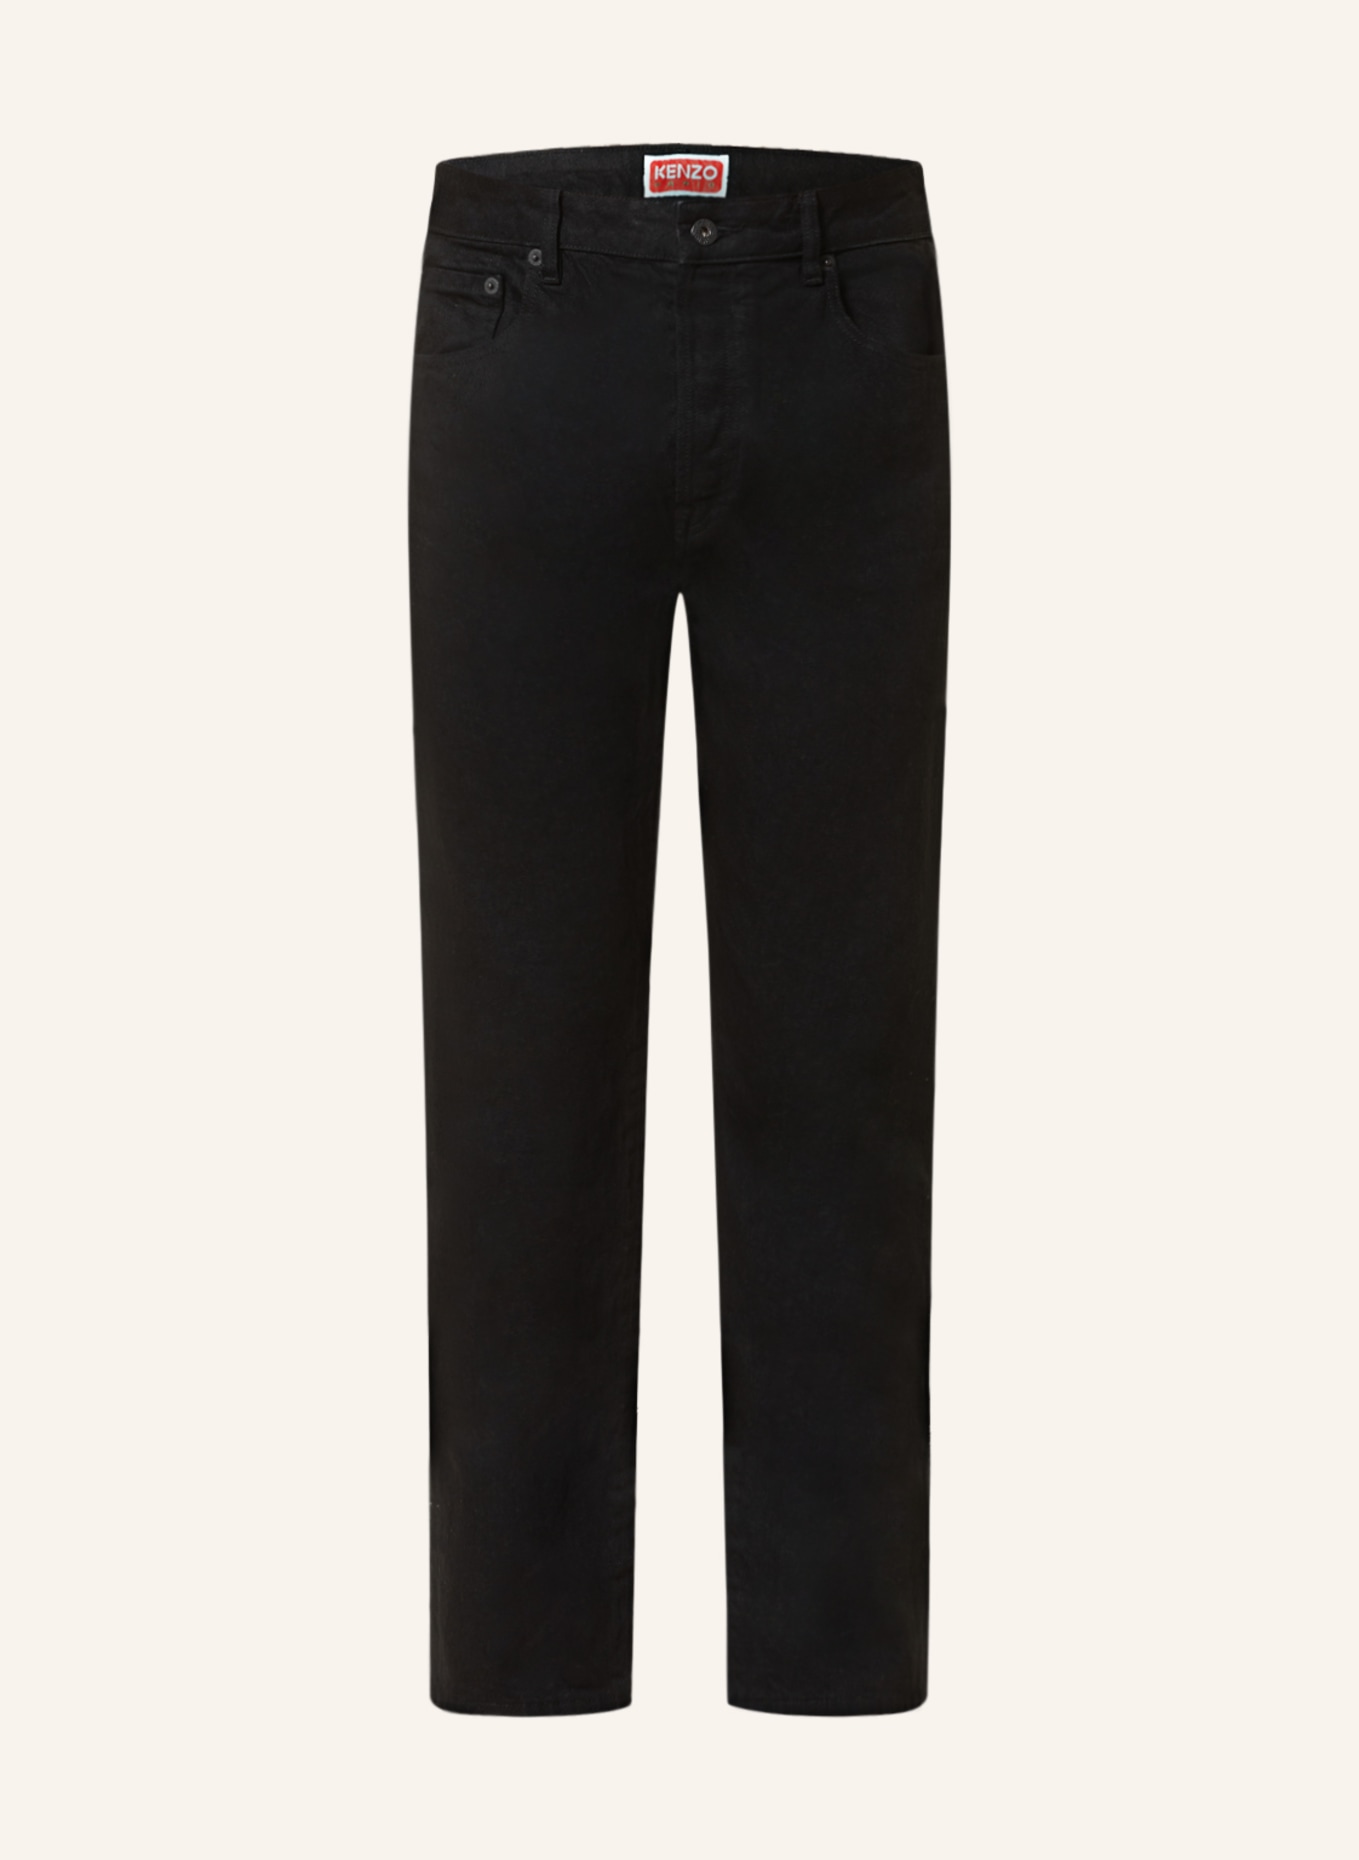 KENZO Jeans BARA Slim Fit, Farbe: BM RINSE BLACK (Bild 1)